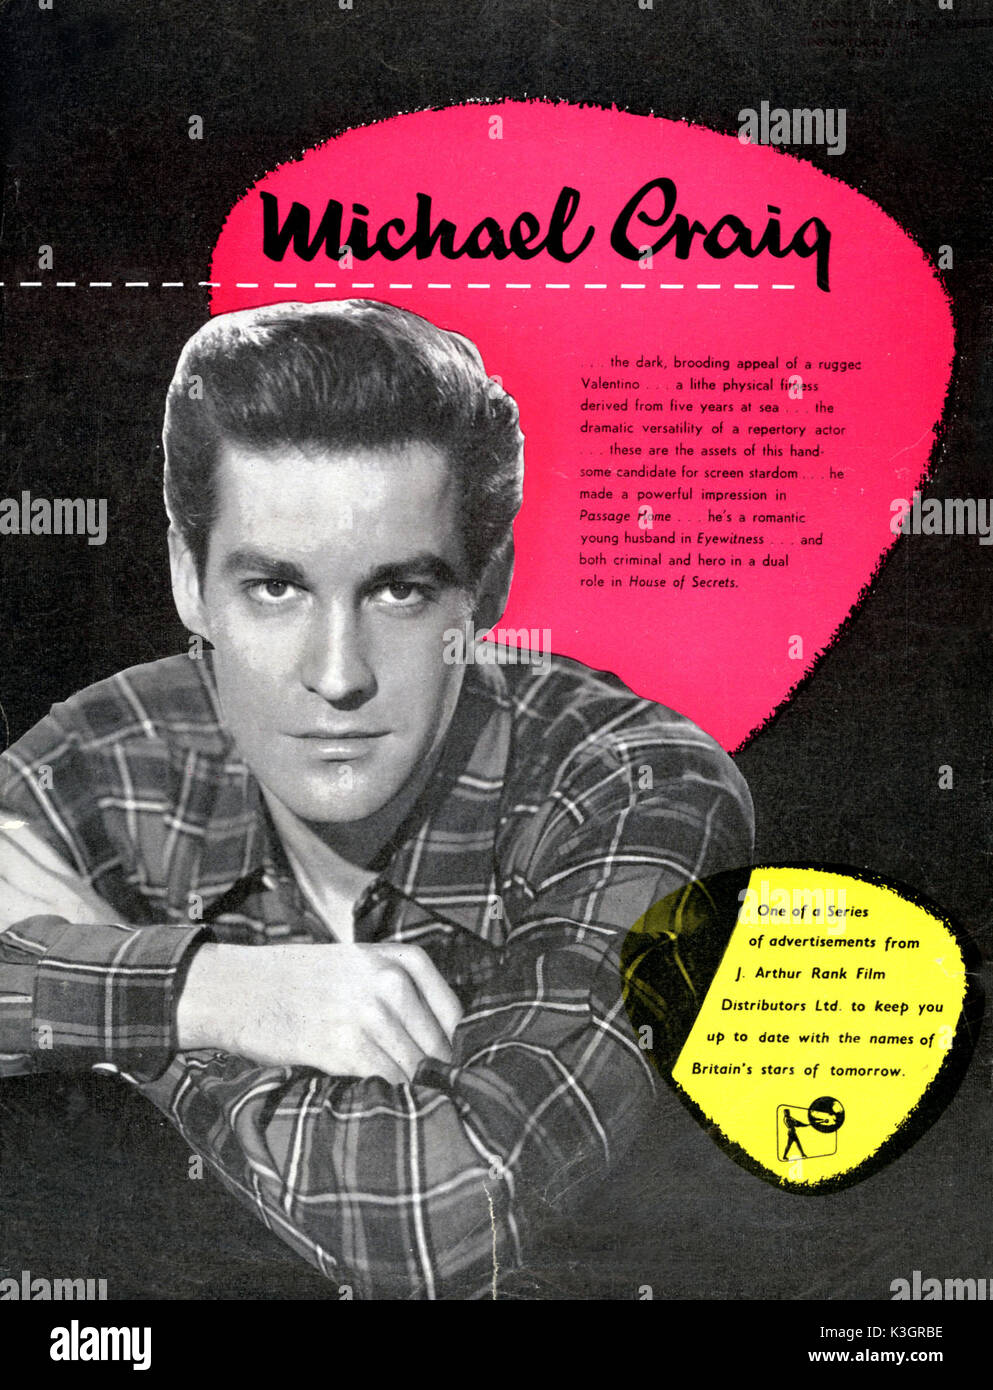 MICHAEL CRAIG Acteur MICHAEL CRAIG acteur un rang 1956 Annonce de l'Organisation annonce Michael Craig comme un 'star de demain' Banque D'Images